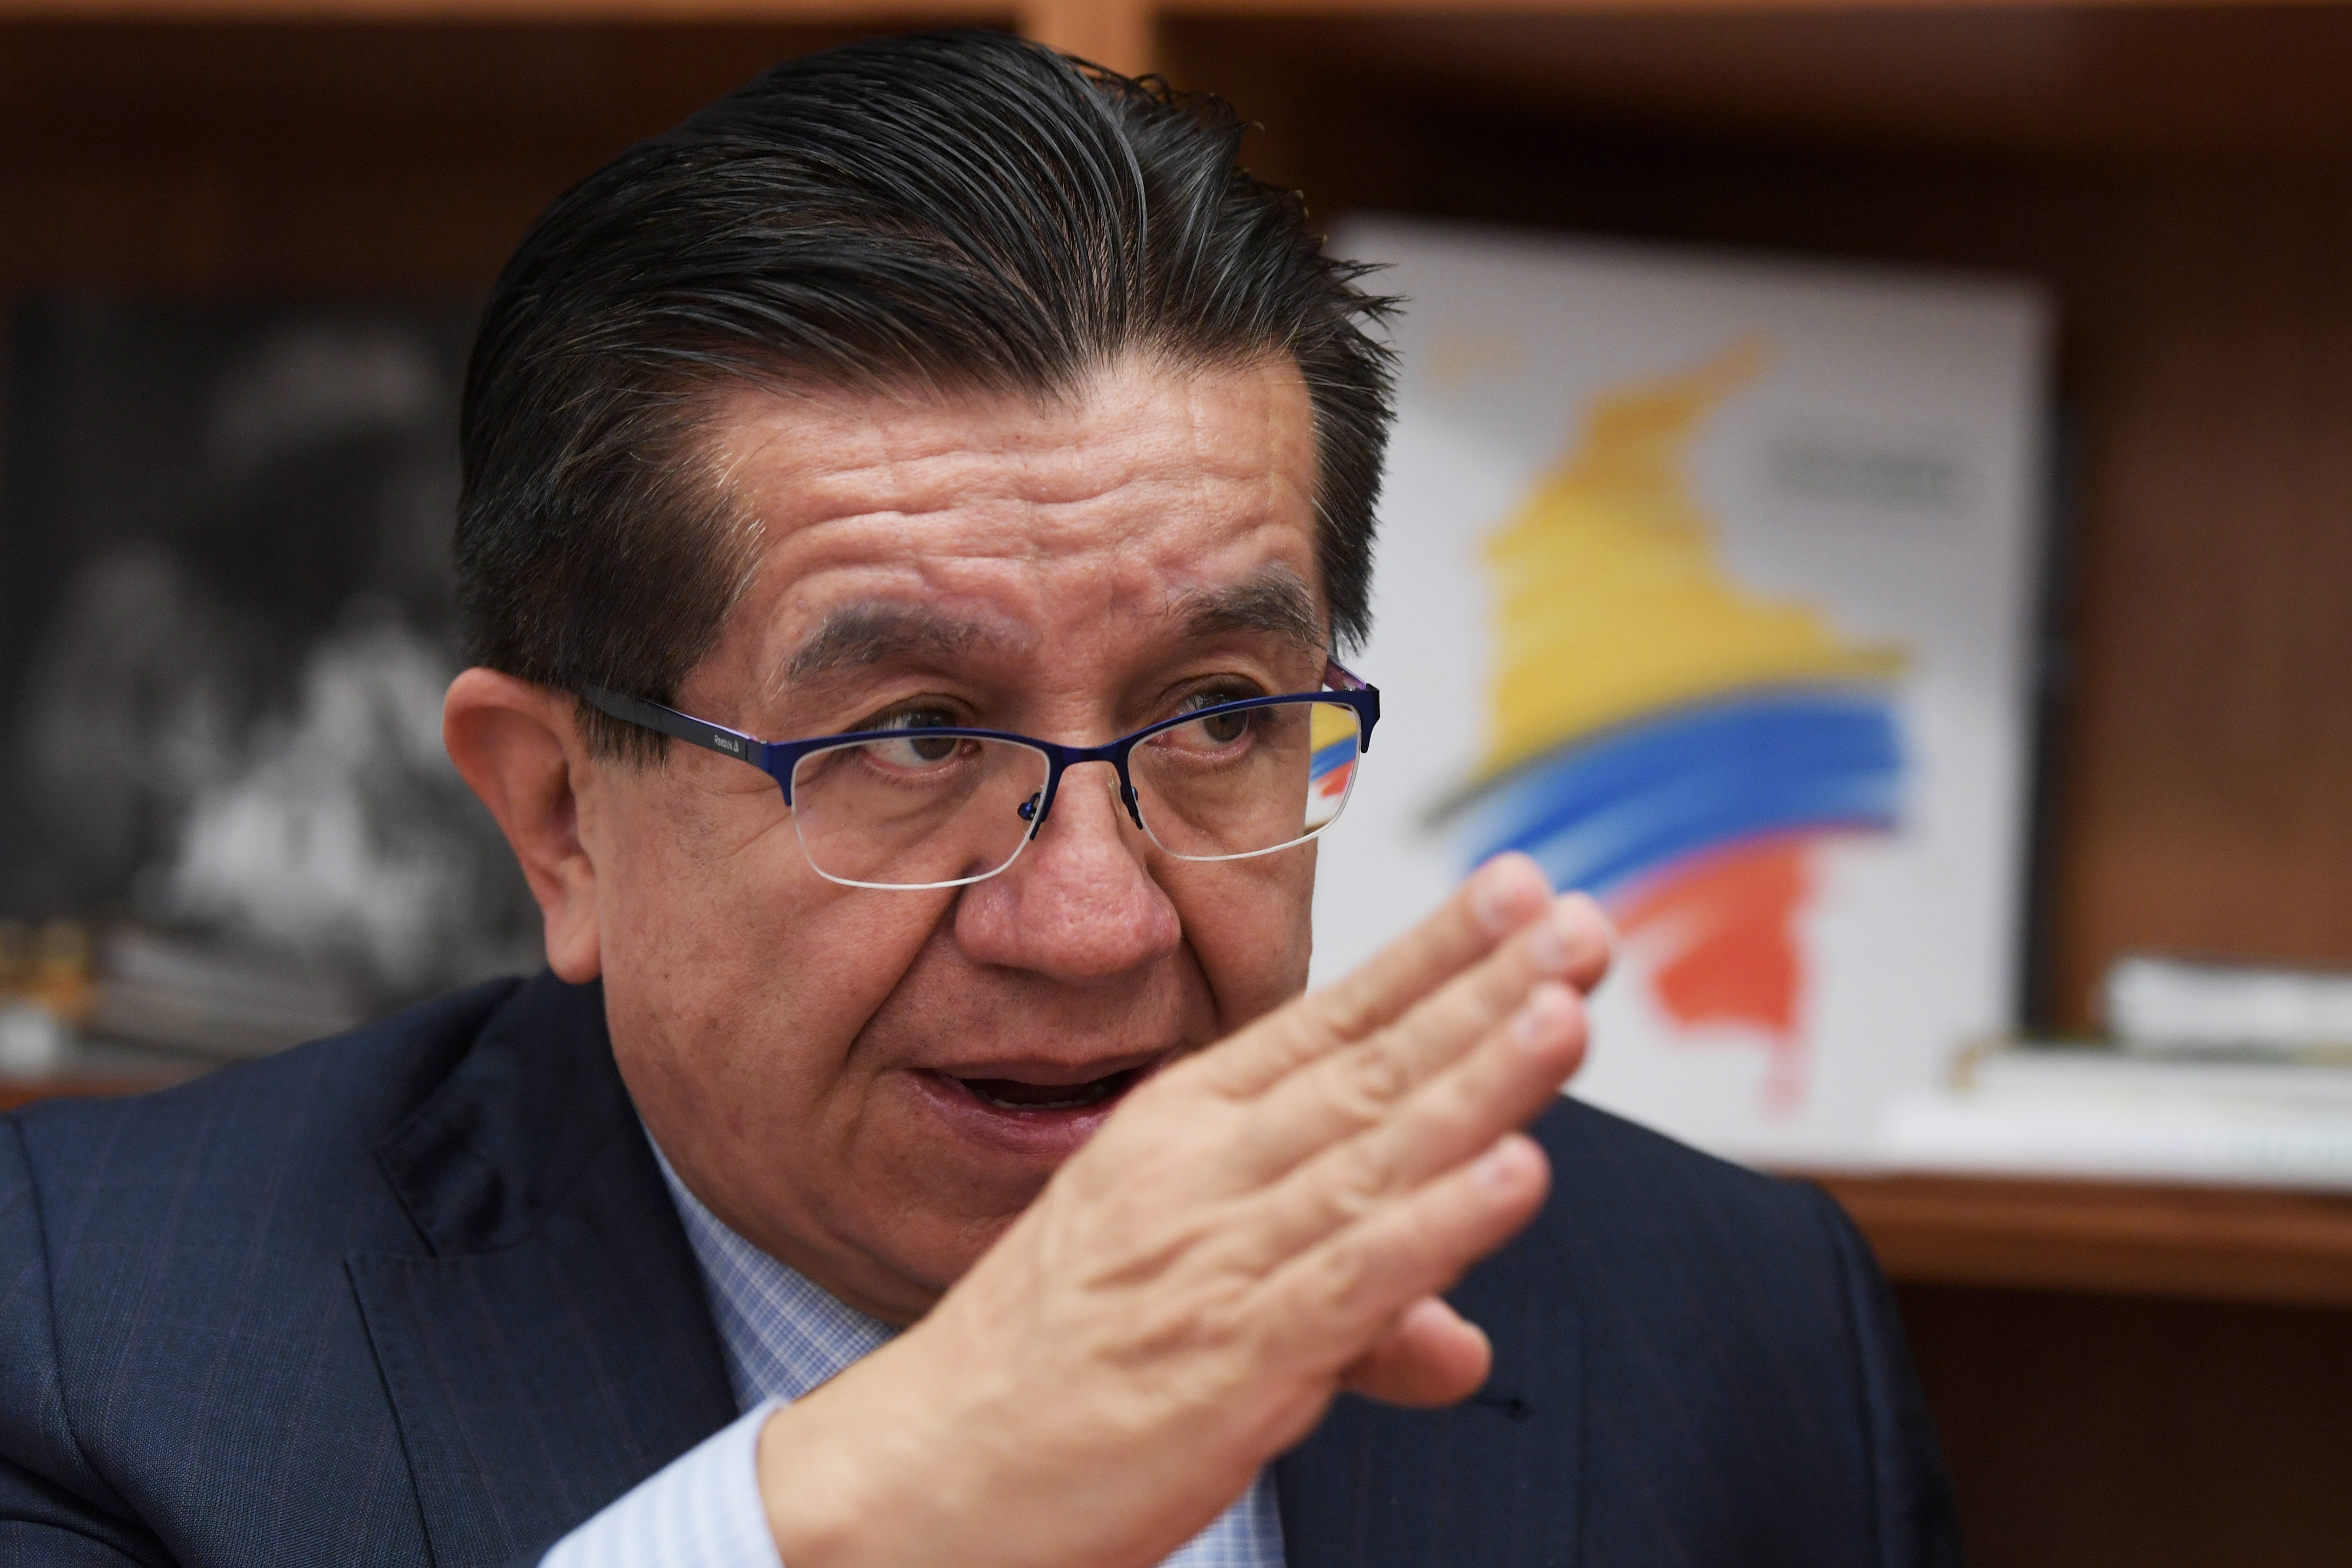 El ministro de Salud de Colombia le apuesta a cinco áreas específicas de llegar a la Organización Panamericana de la Salud. EFE/ Lenin Nolly
